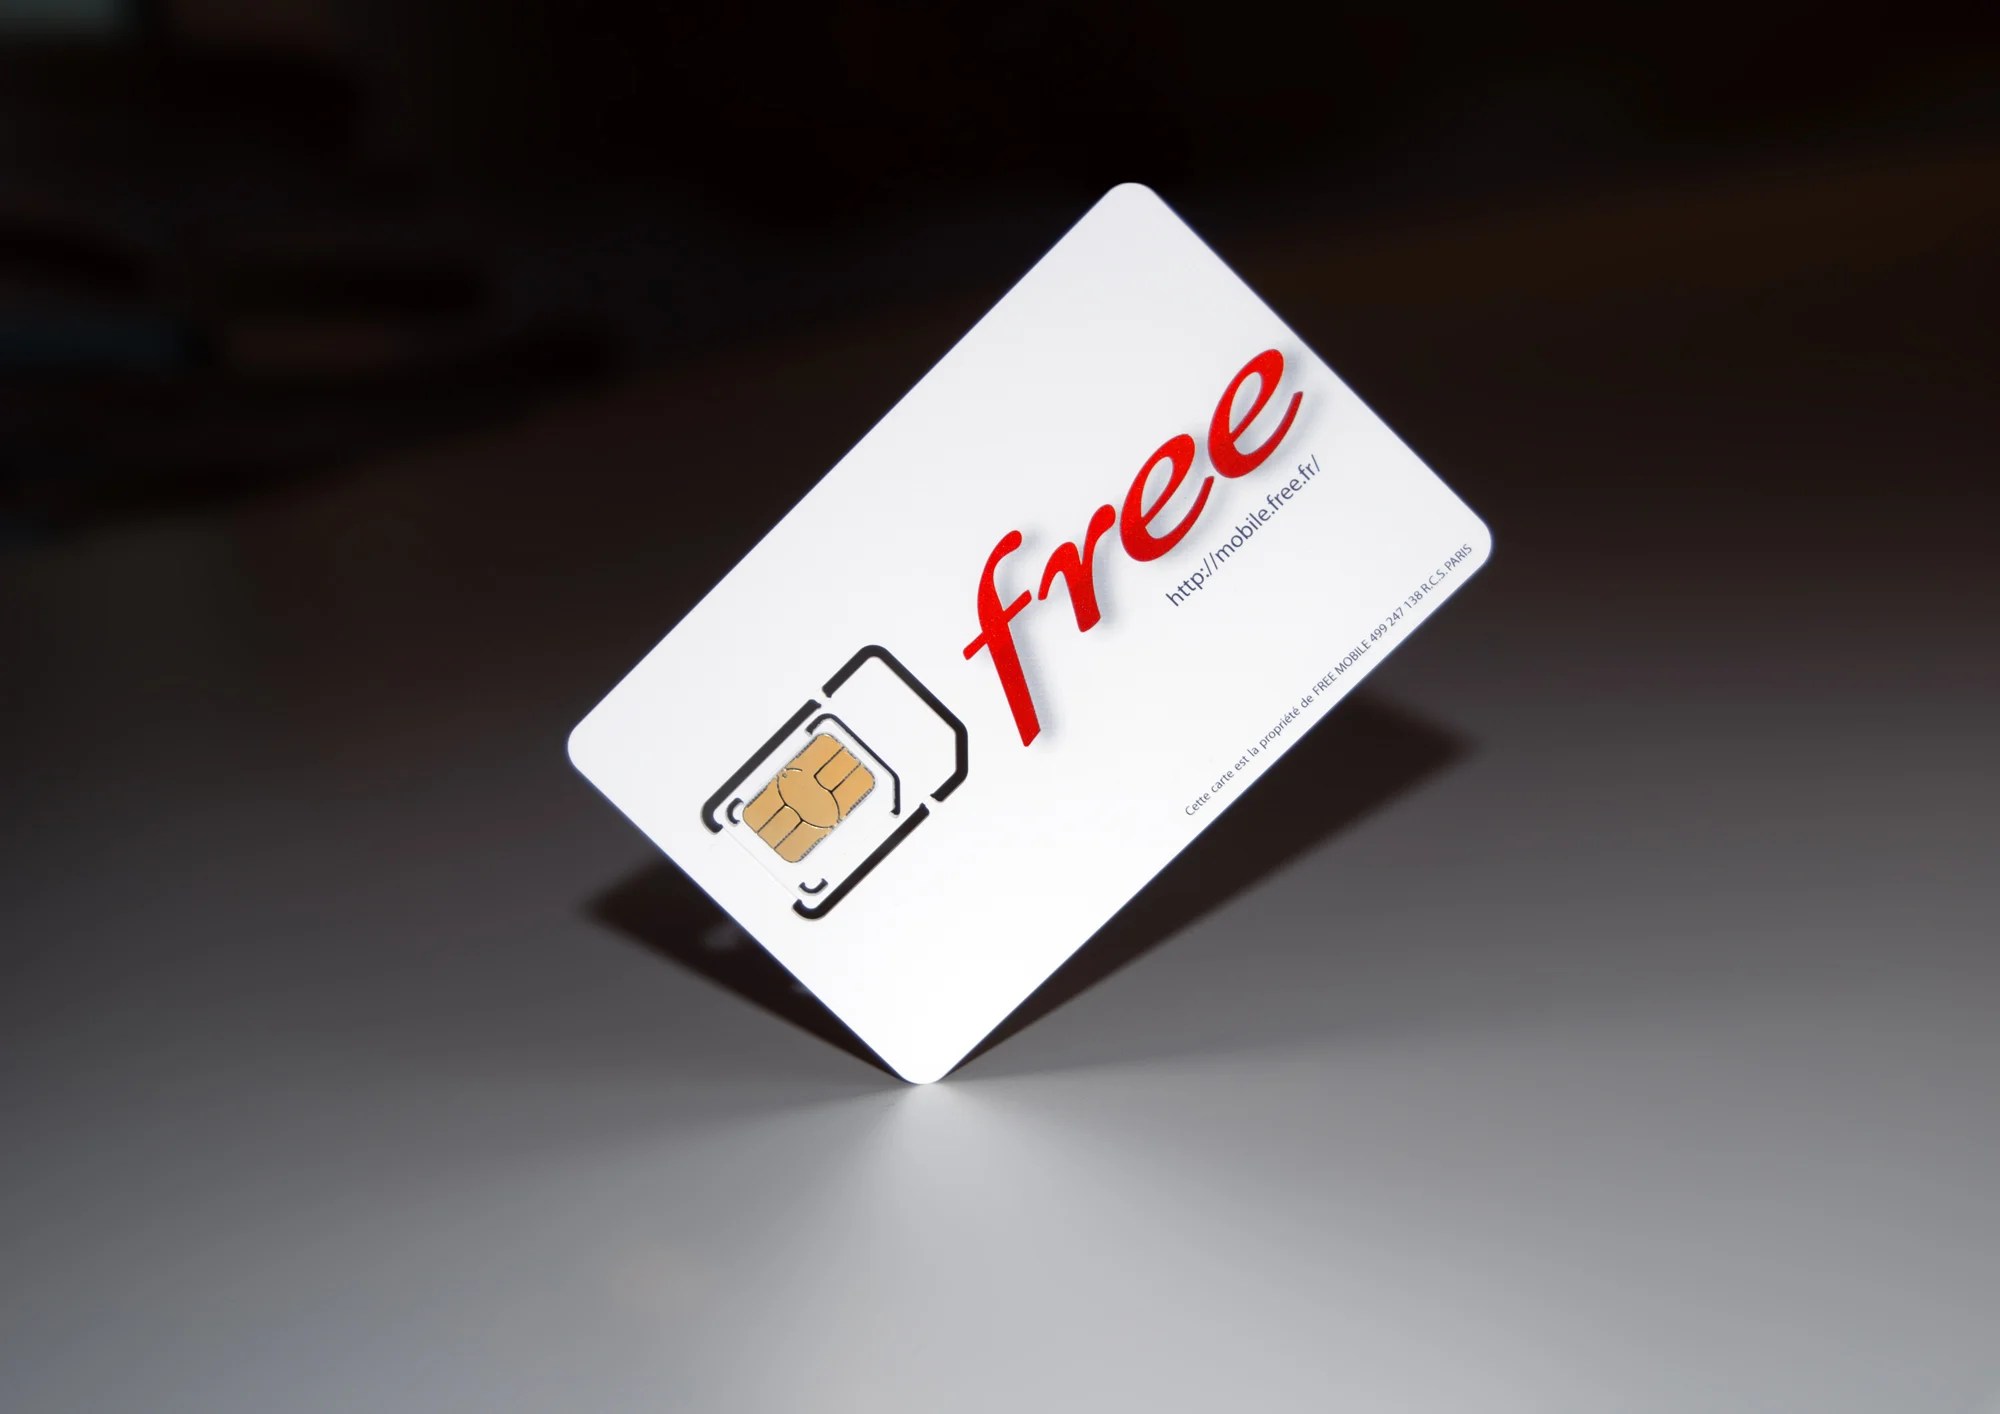 Avec sa nouvelle offre, Free Mobile va une nouvelle fois marquer le marché des télécom